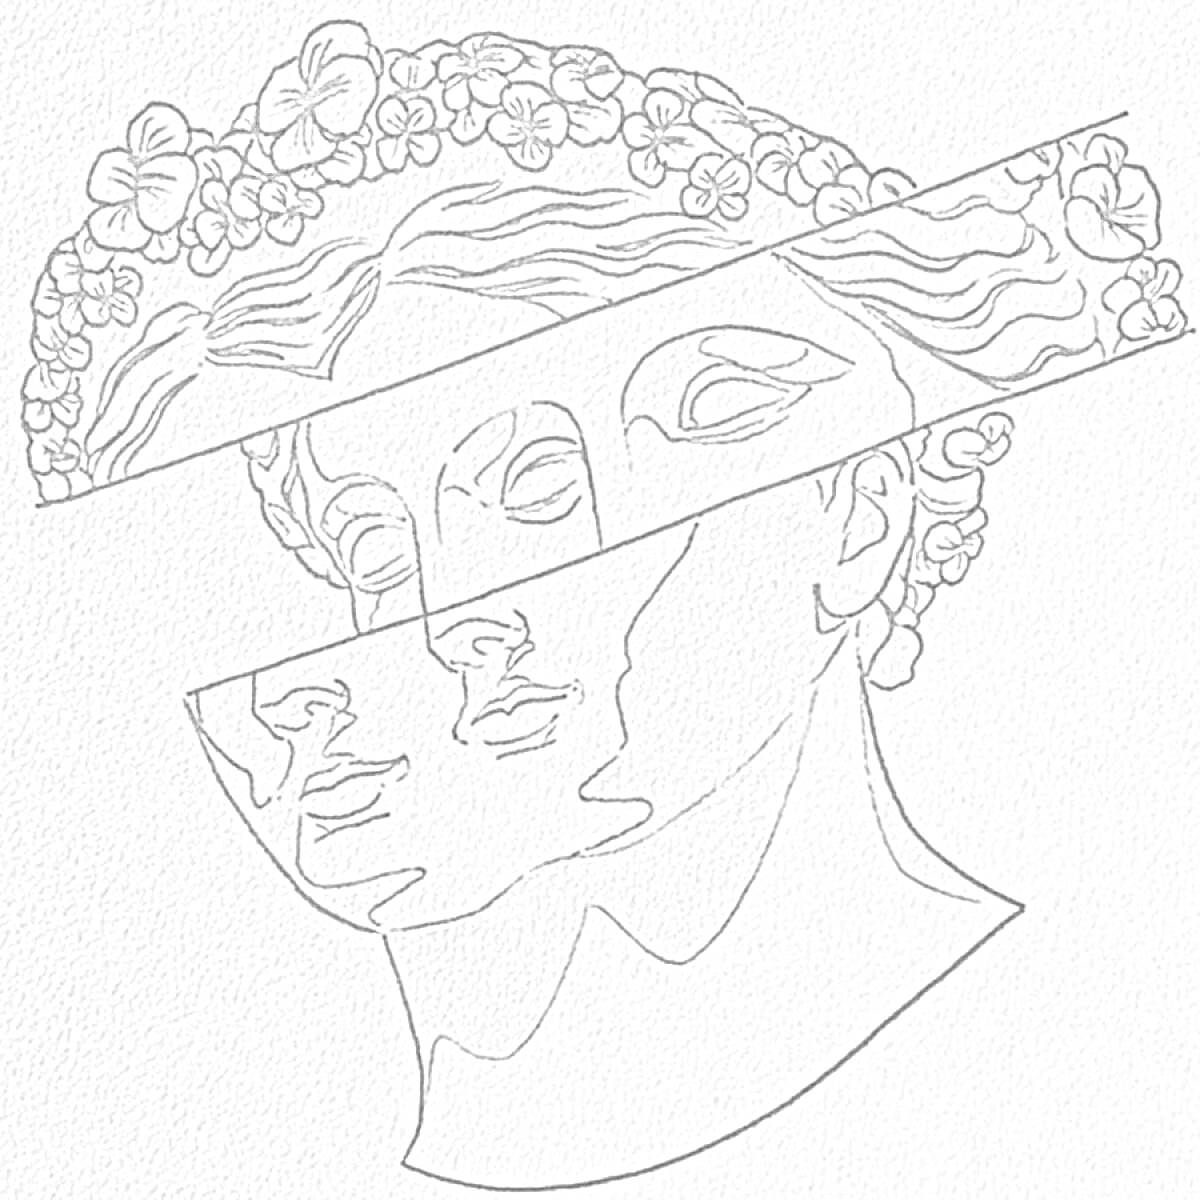 Скульптура головы с разрезанными сегментами и венком из цветов на голове